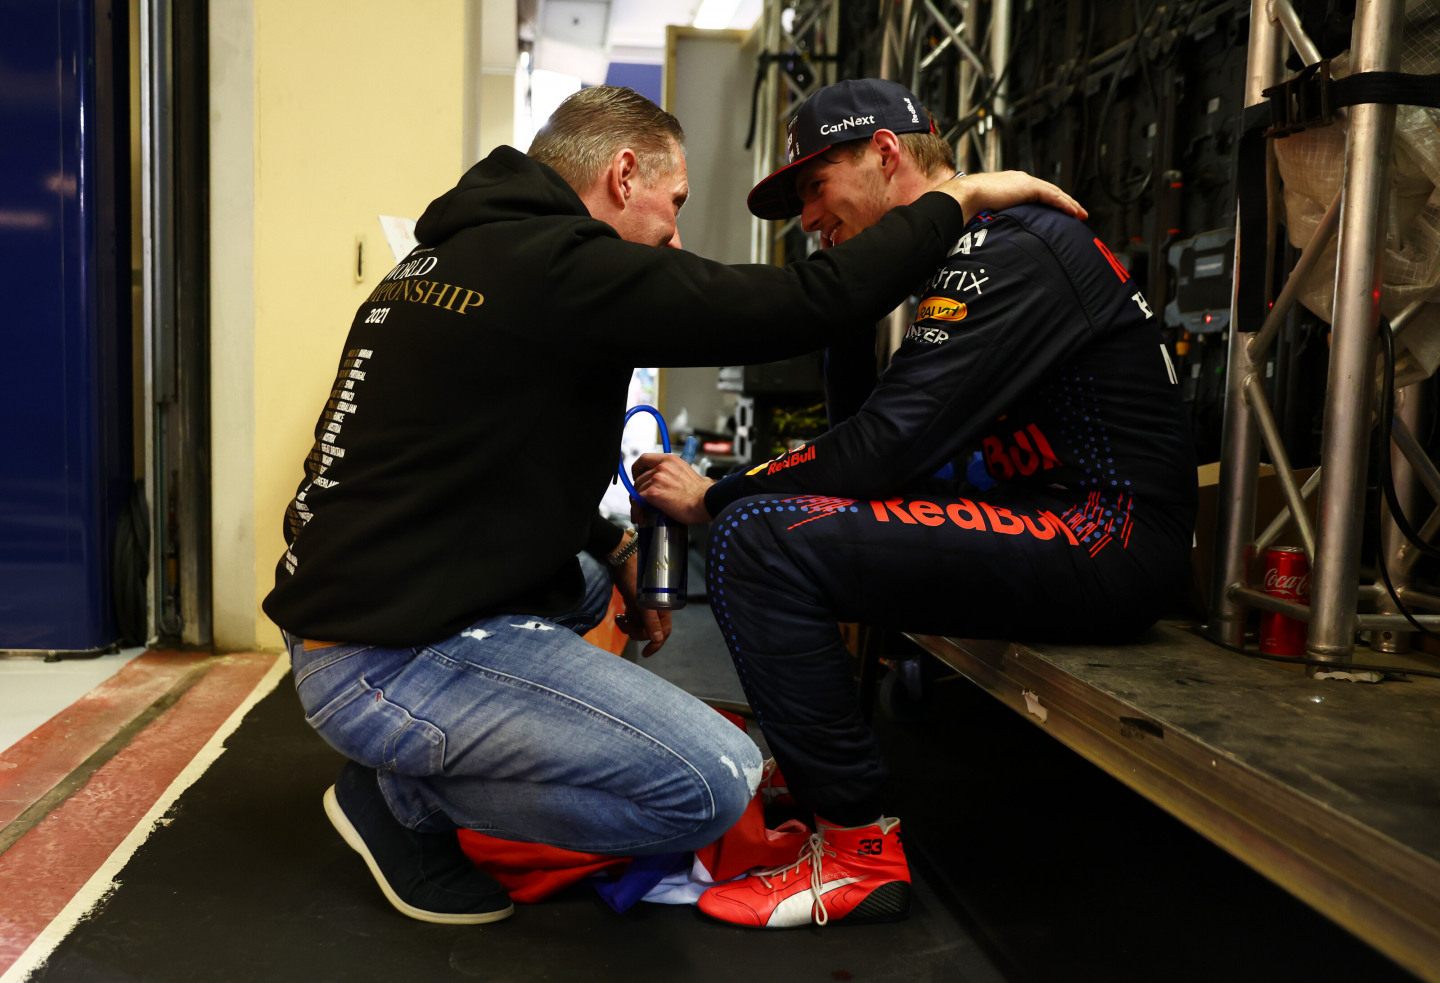 Йос Ферстаппен сам не добился успехов в Формуле 1, но вырастил из сына чемпиона © Red Bull Content Pool / Getty Images